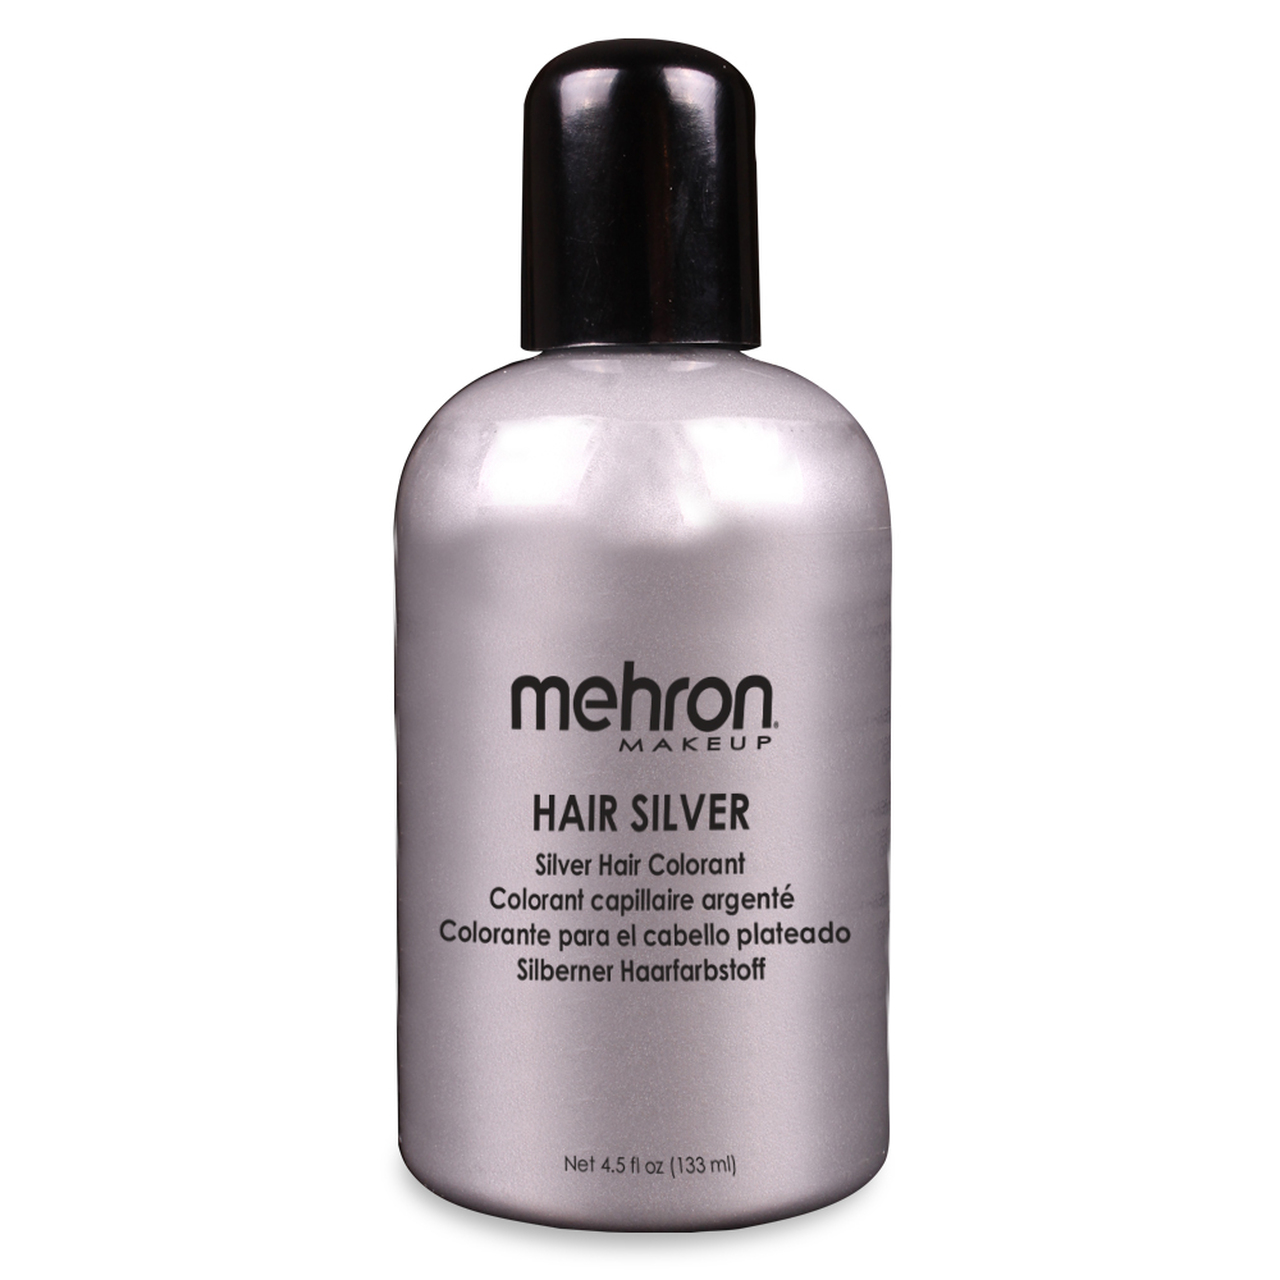 Mehron hair Silver